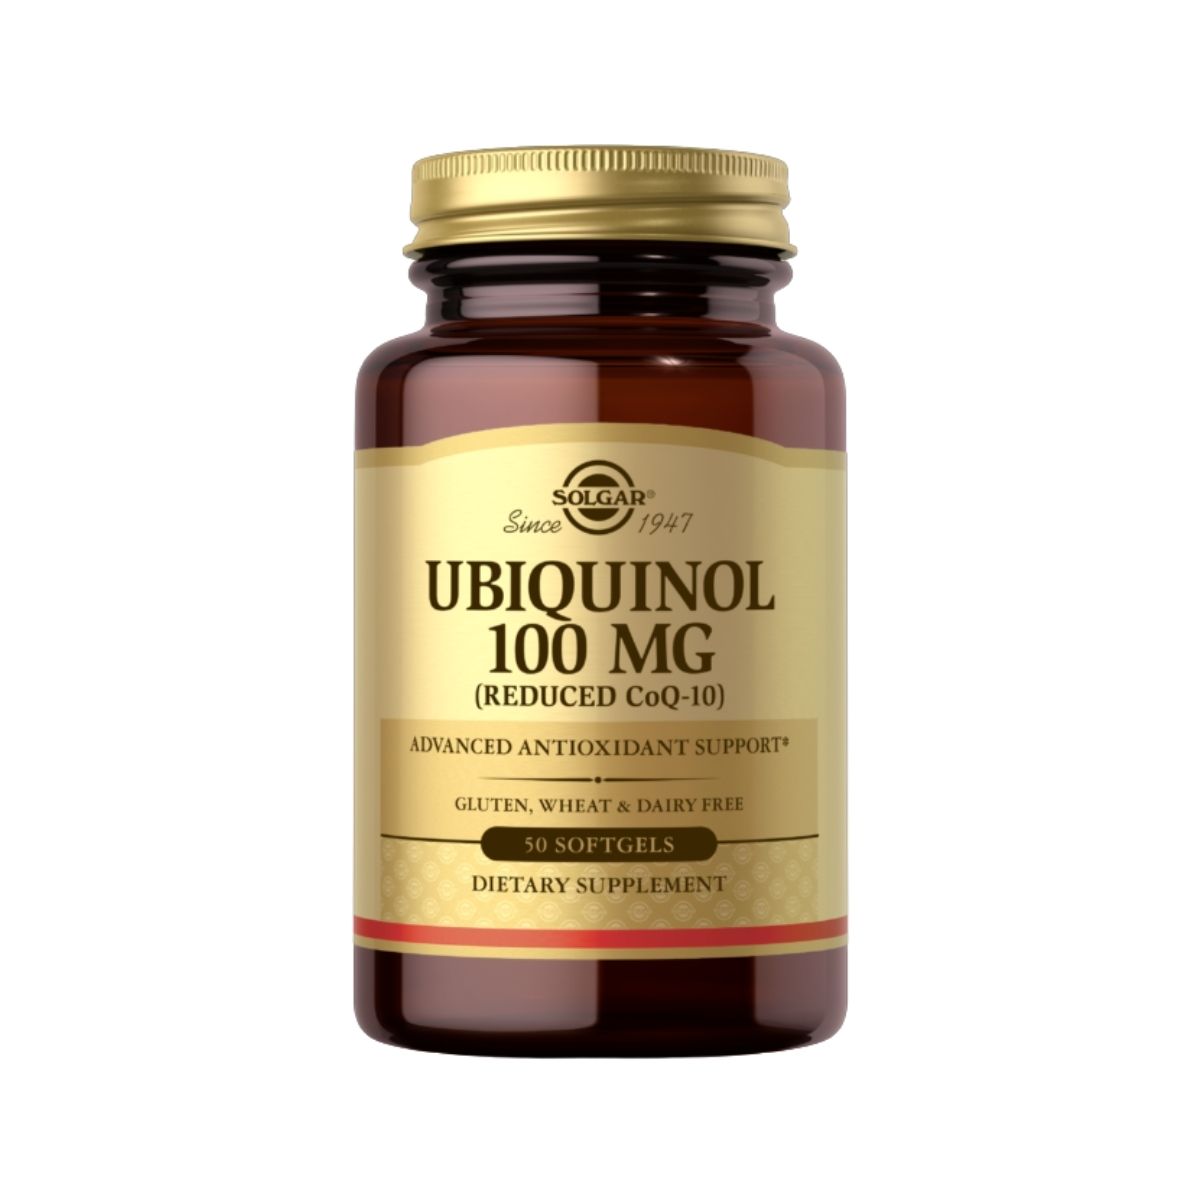 Ubiquinol 100mg (Reduced CoQ-10)